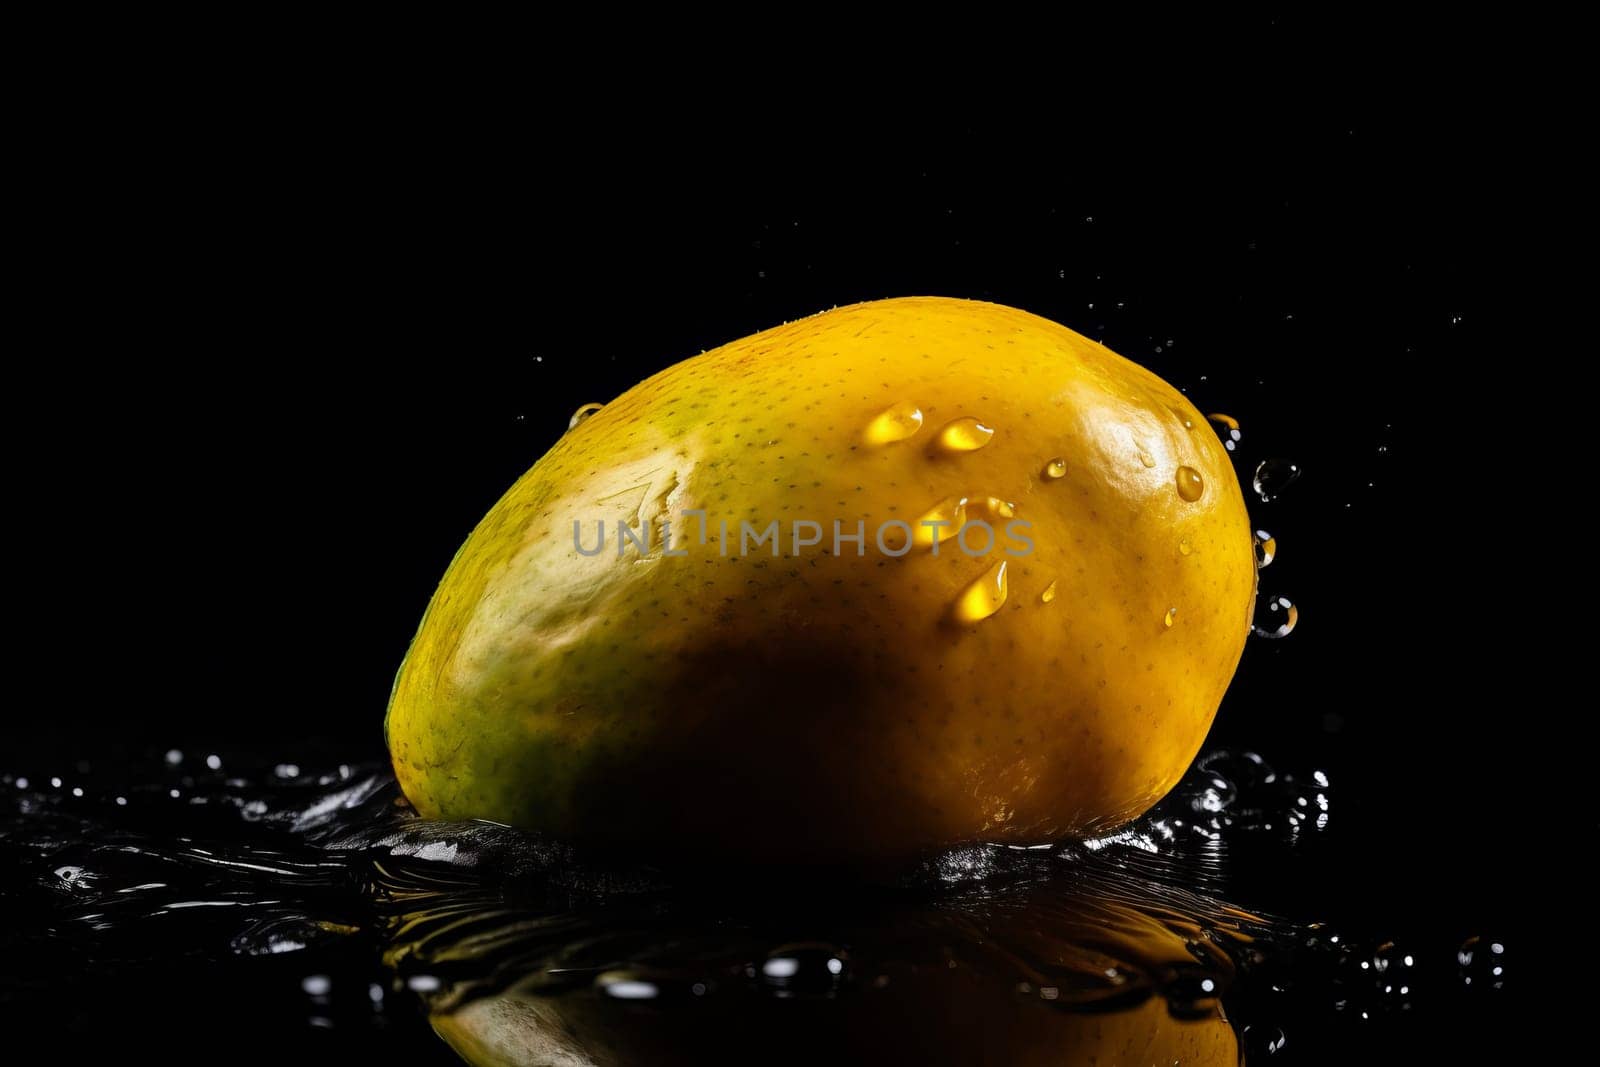 Mango on black background by ylivdesign